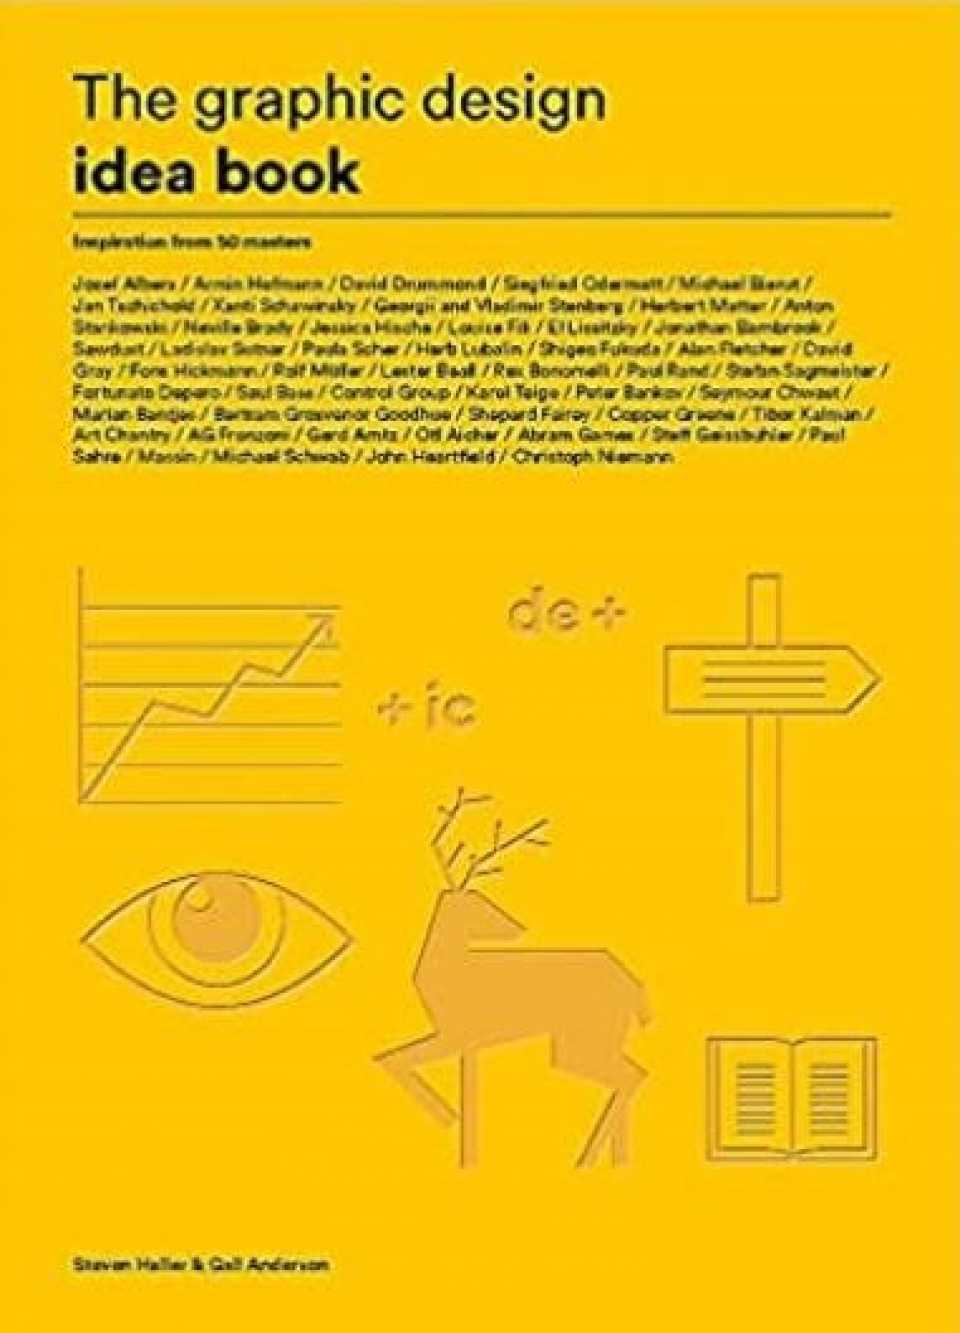 Image of the Graphic Design Idea book